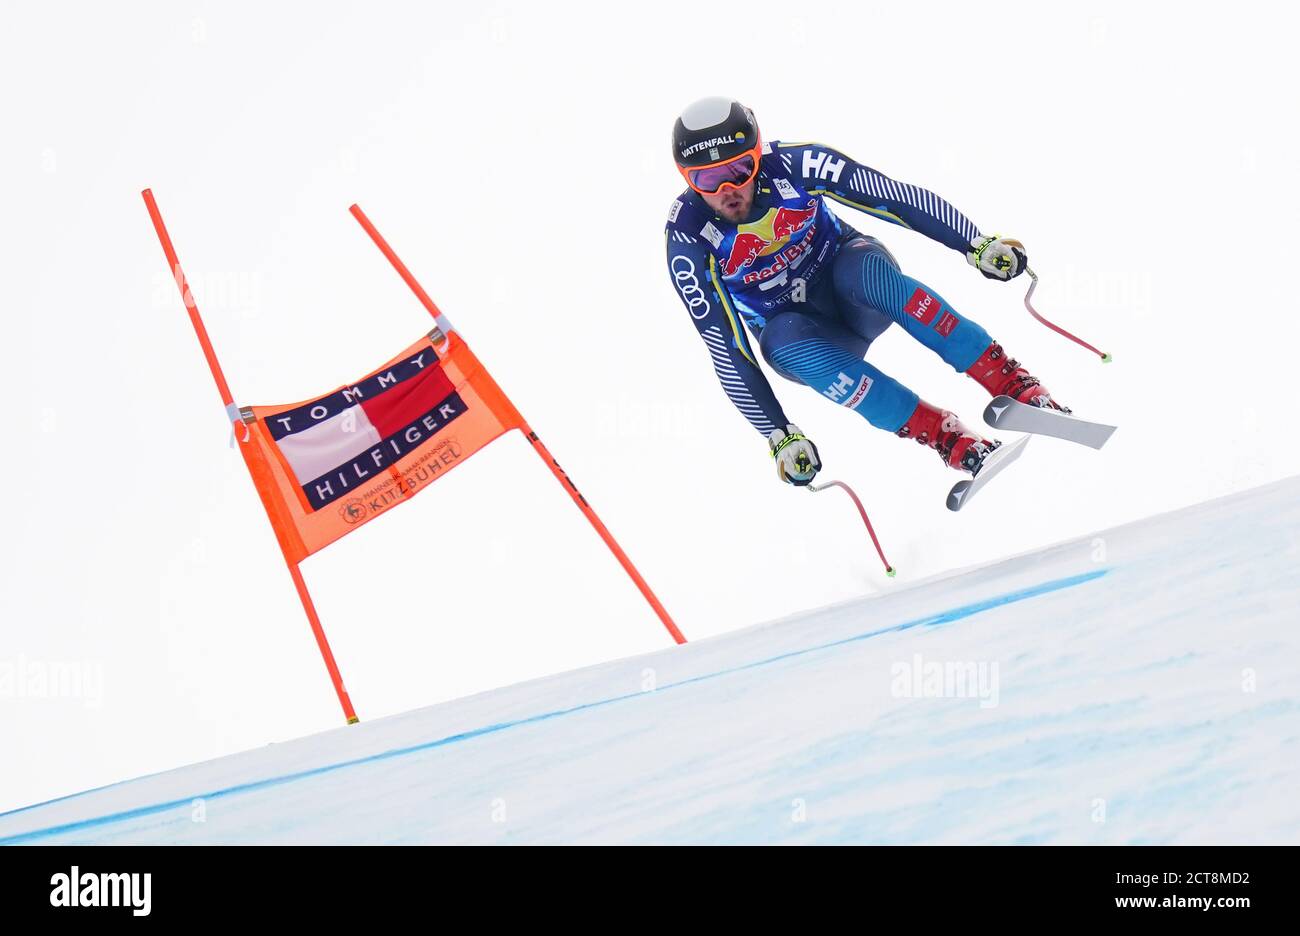 Alexander Koell durante l'evento Men's Downhill per la Coppa del mondo di sci alpino FIS 2019-20 a Kitzbuhel, Austria. PHOTO CREDIT : © MARK PAIN / ALAMY Foto Stock